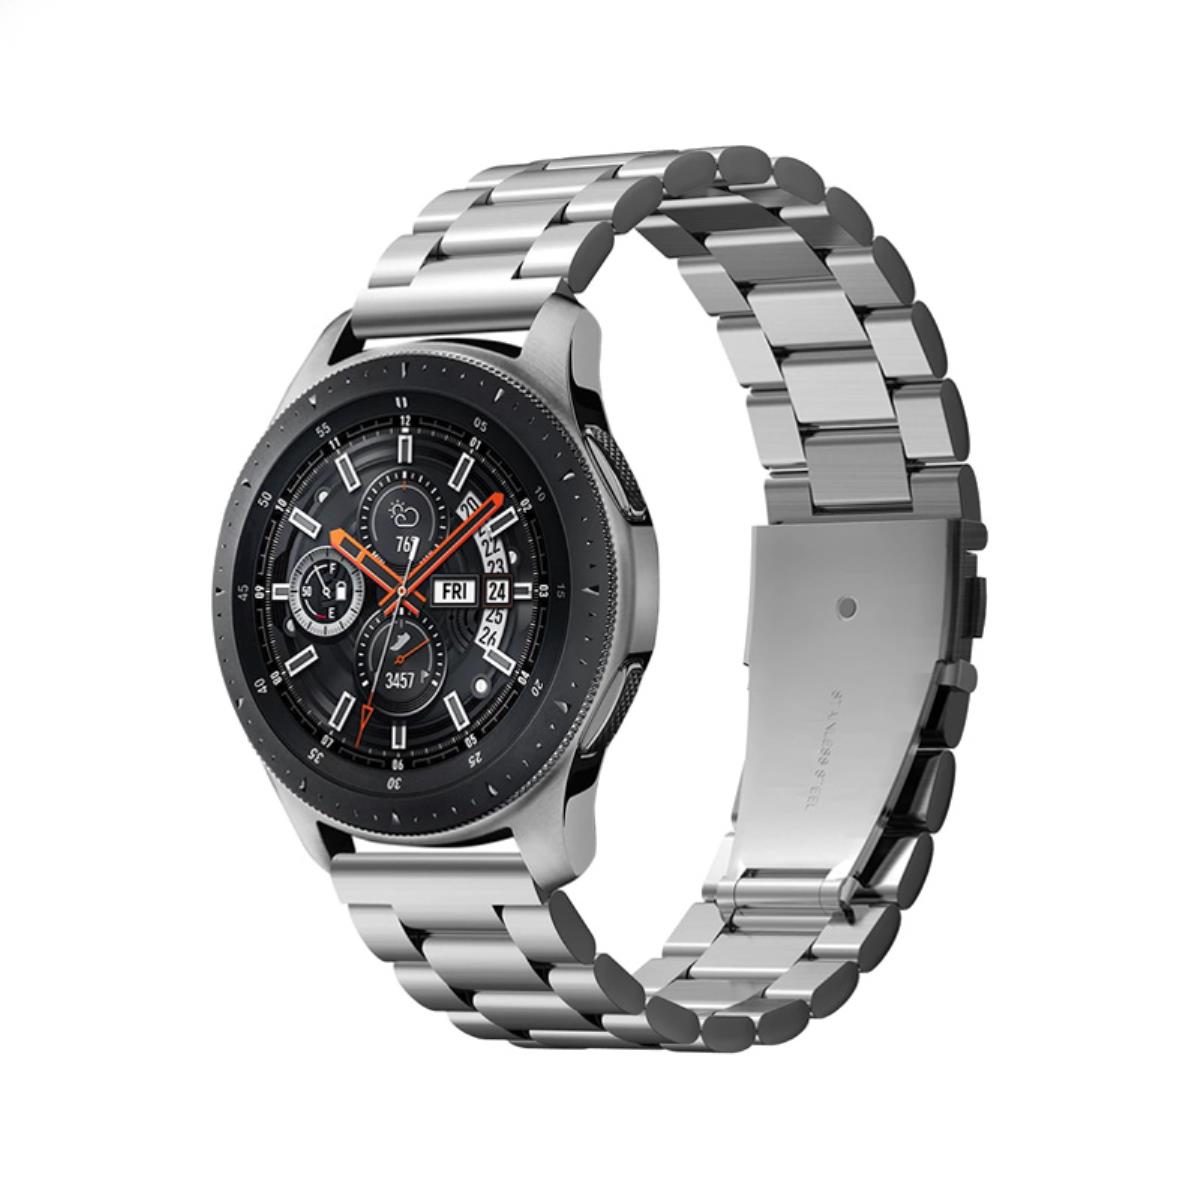 Samsung galaxy watch r800. Samsung Galaxy watch 46mm Silver r800. Samsung Galaxy watch4 46mm Silver (SM-r890n). Samsung Gear watch 46mm.